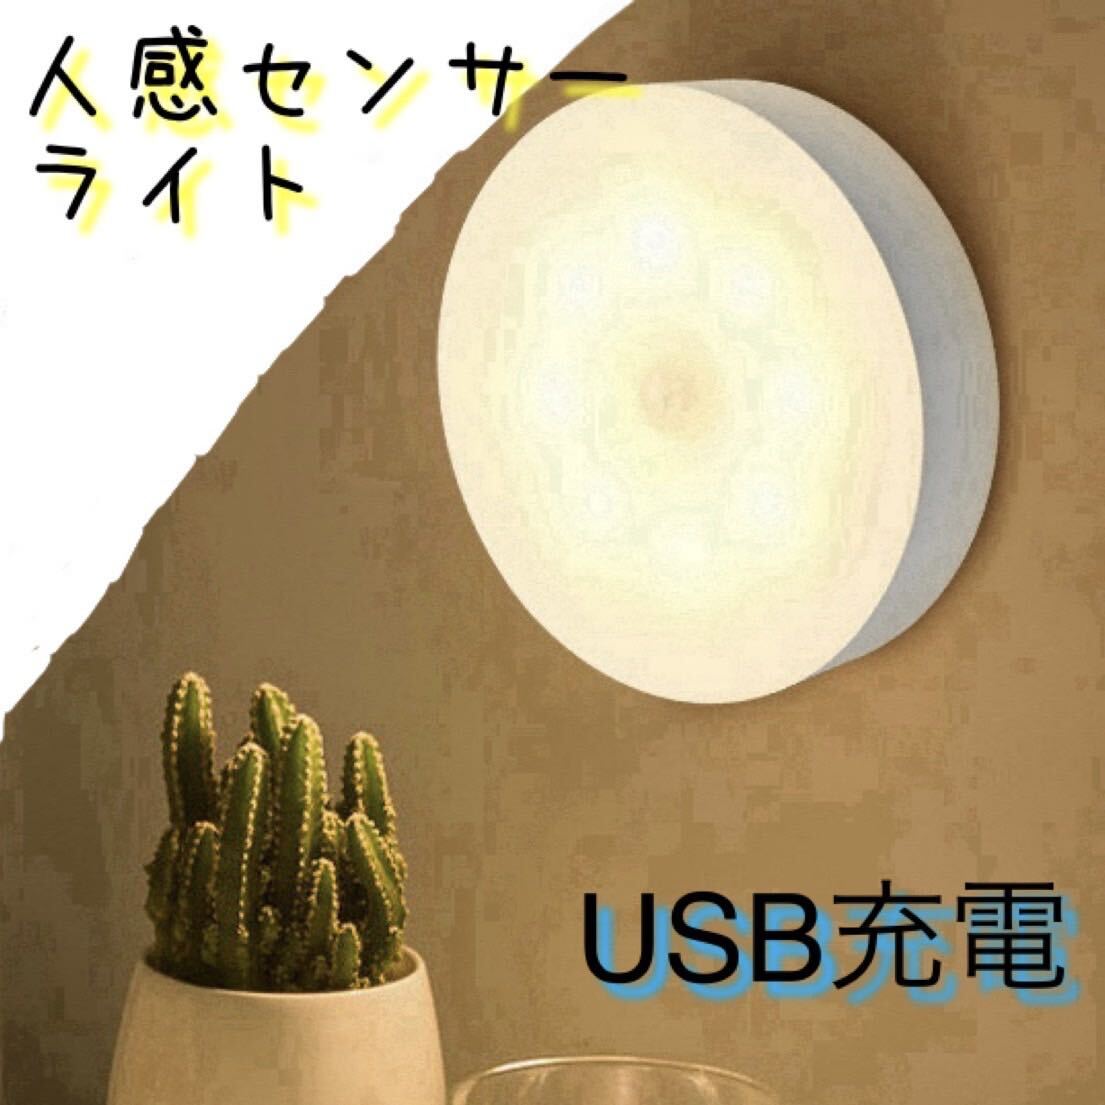 センサーライト 人感 電灯 室内 自動 USB 電球 蛍光灯 LED_画像1